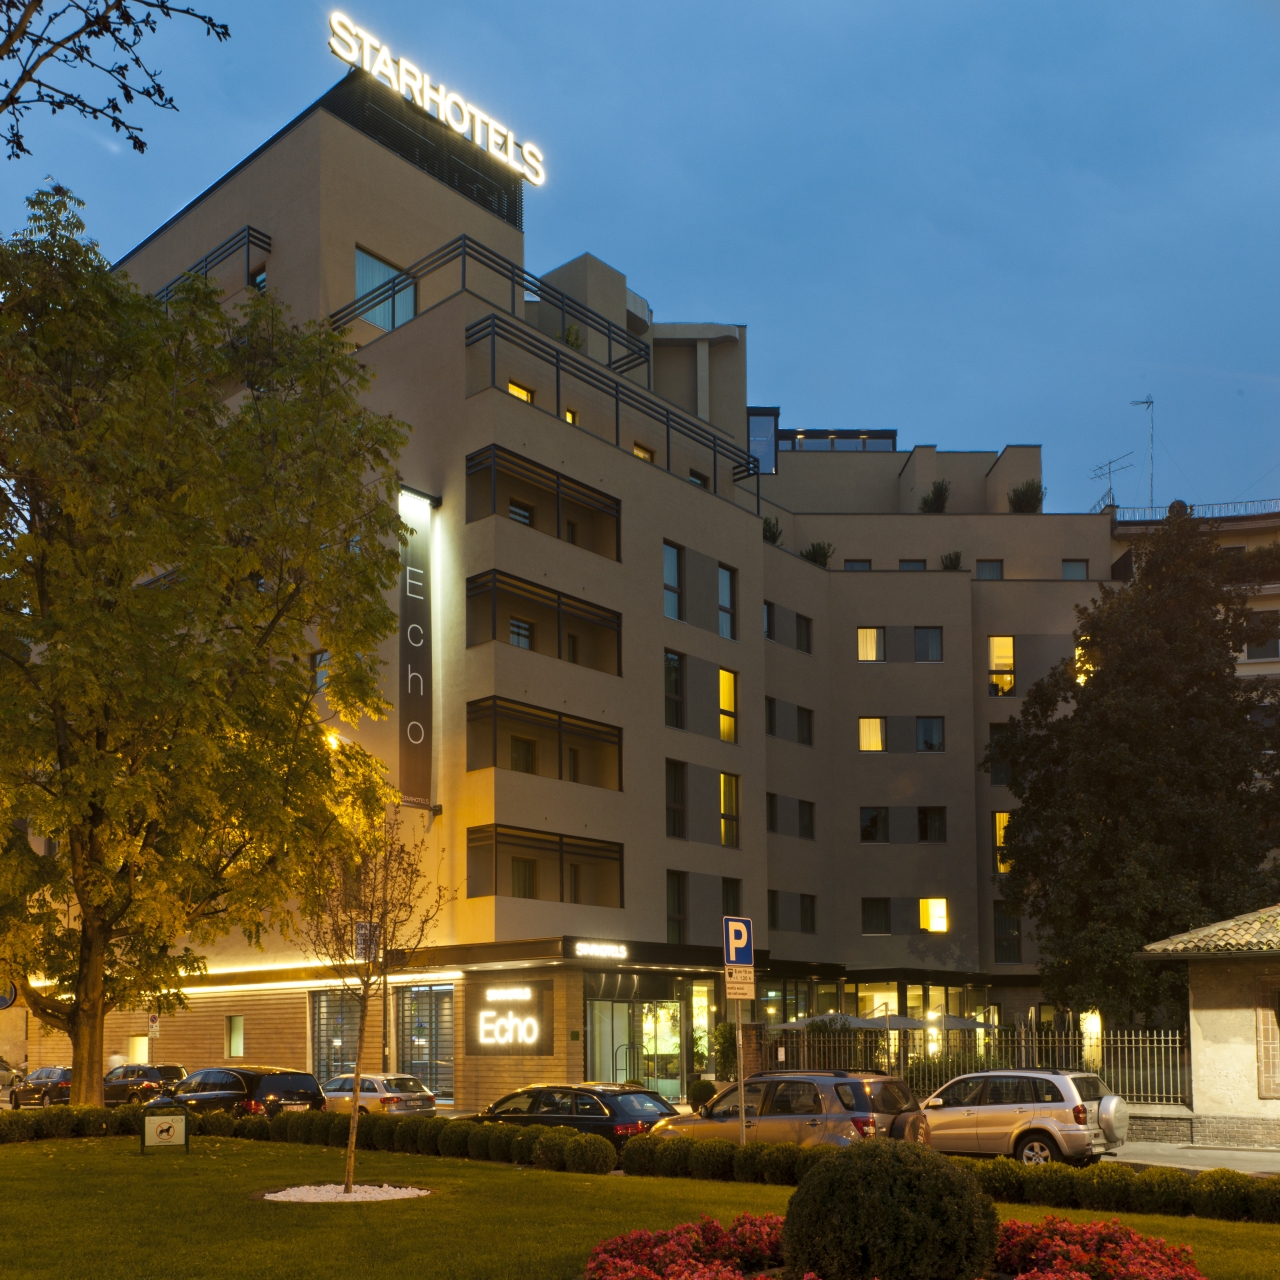 Starhotels Echo - 4 HRS star hotel in Milan (Lombardy)